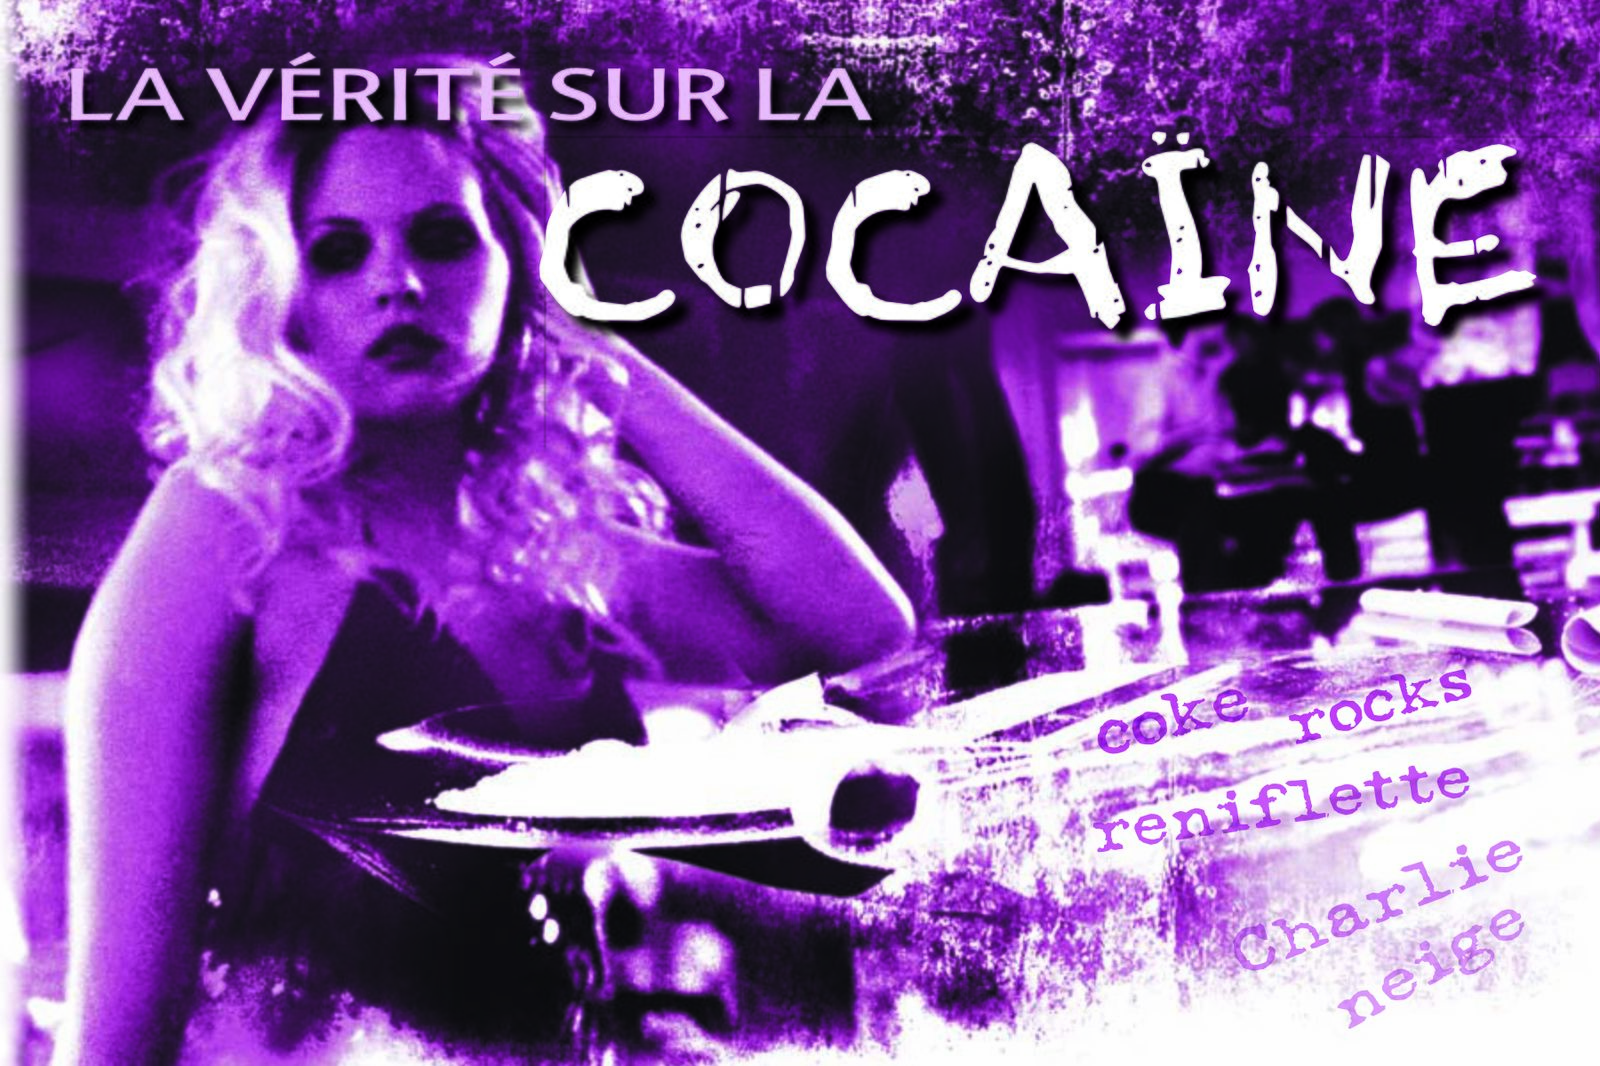 La vérité sur la cocaïne et ses dangers